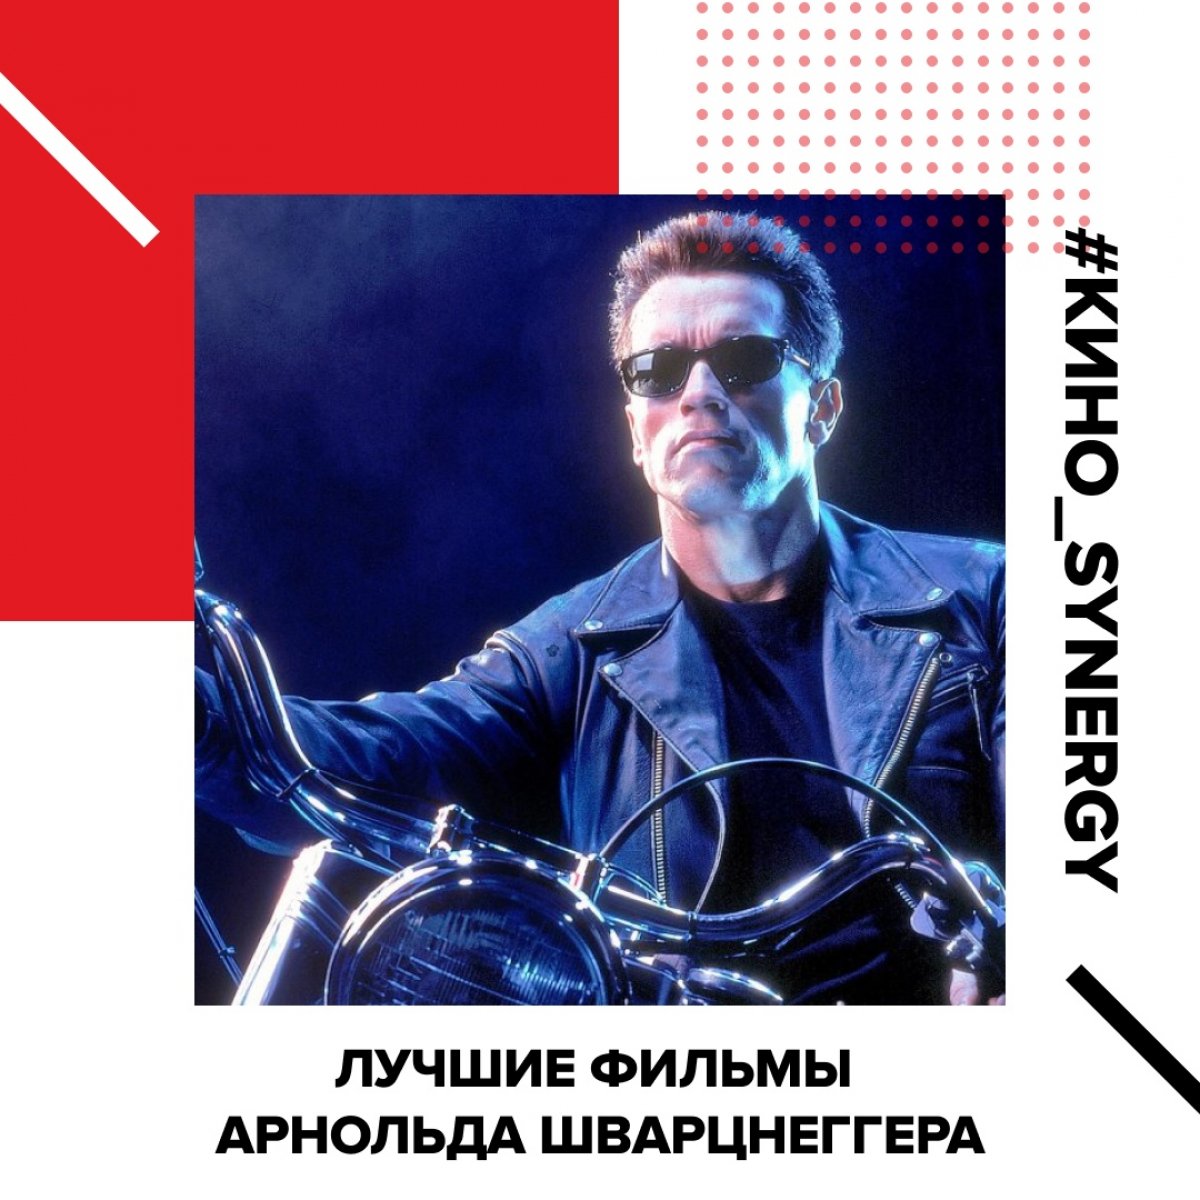 Уже совсем скоро легендарный Арнольд Шварценеггер приезжает в Санкт-Петербург на Synergy Global Forum — отличный повод вспомнить его лучшие фильмы и выбрать свой любимый!